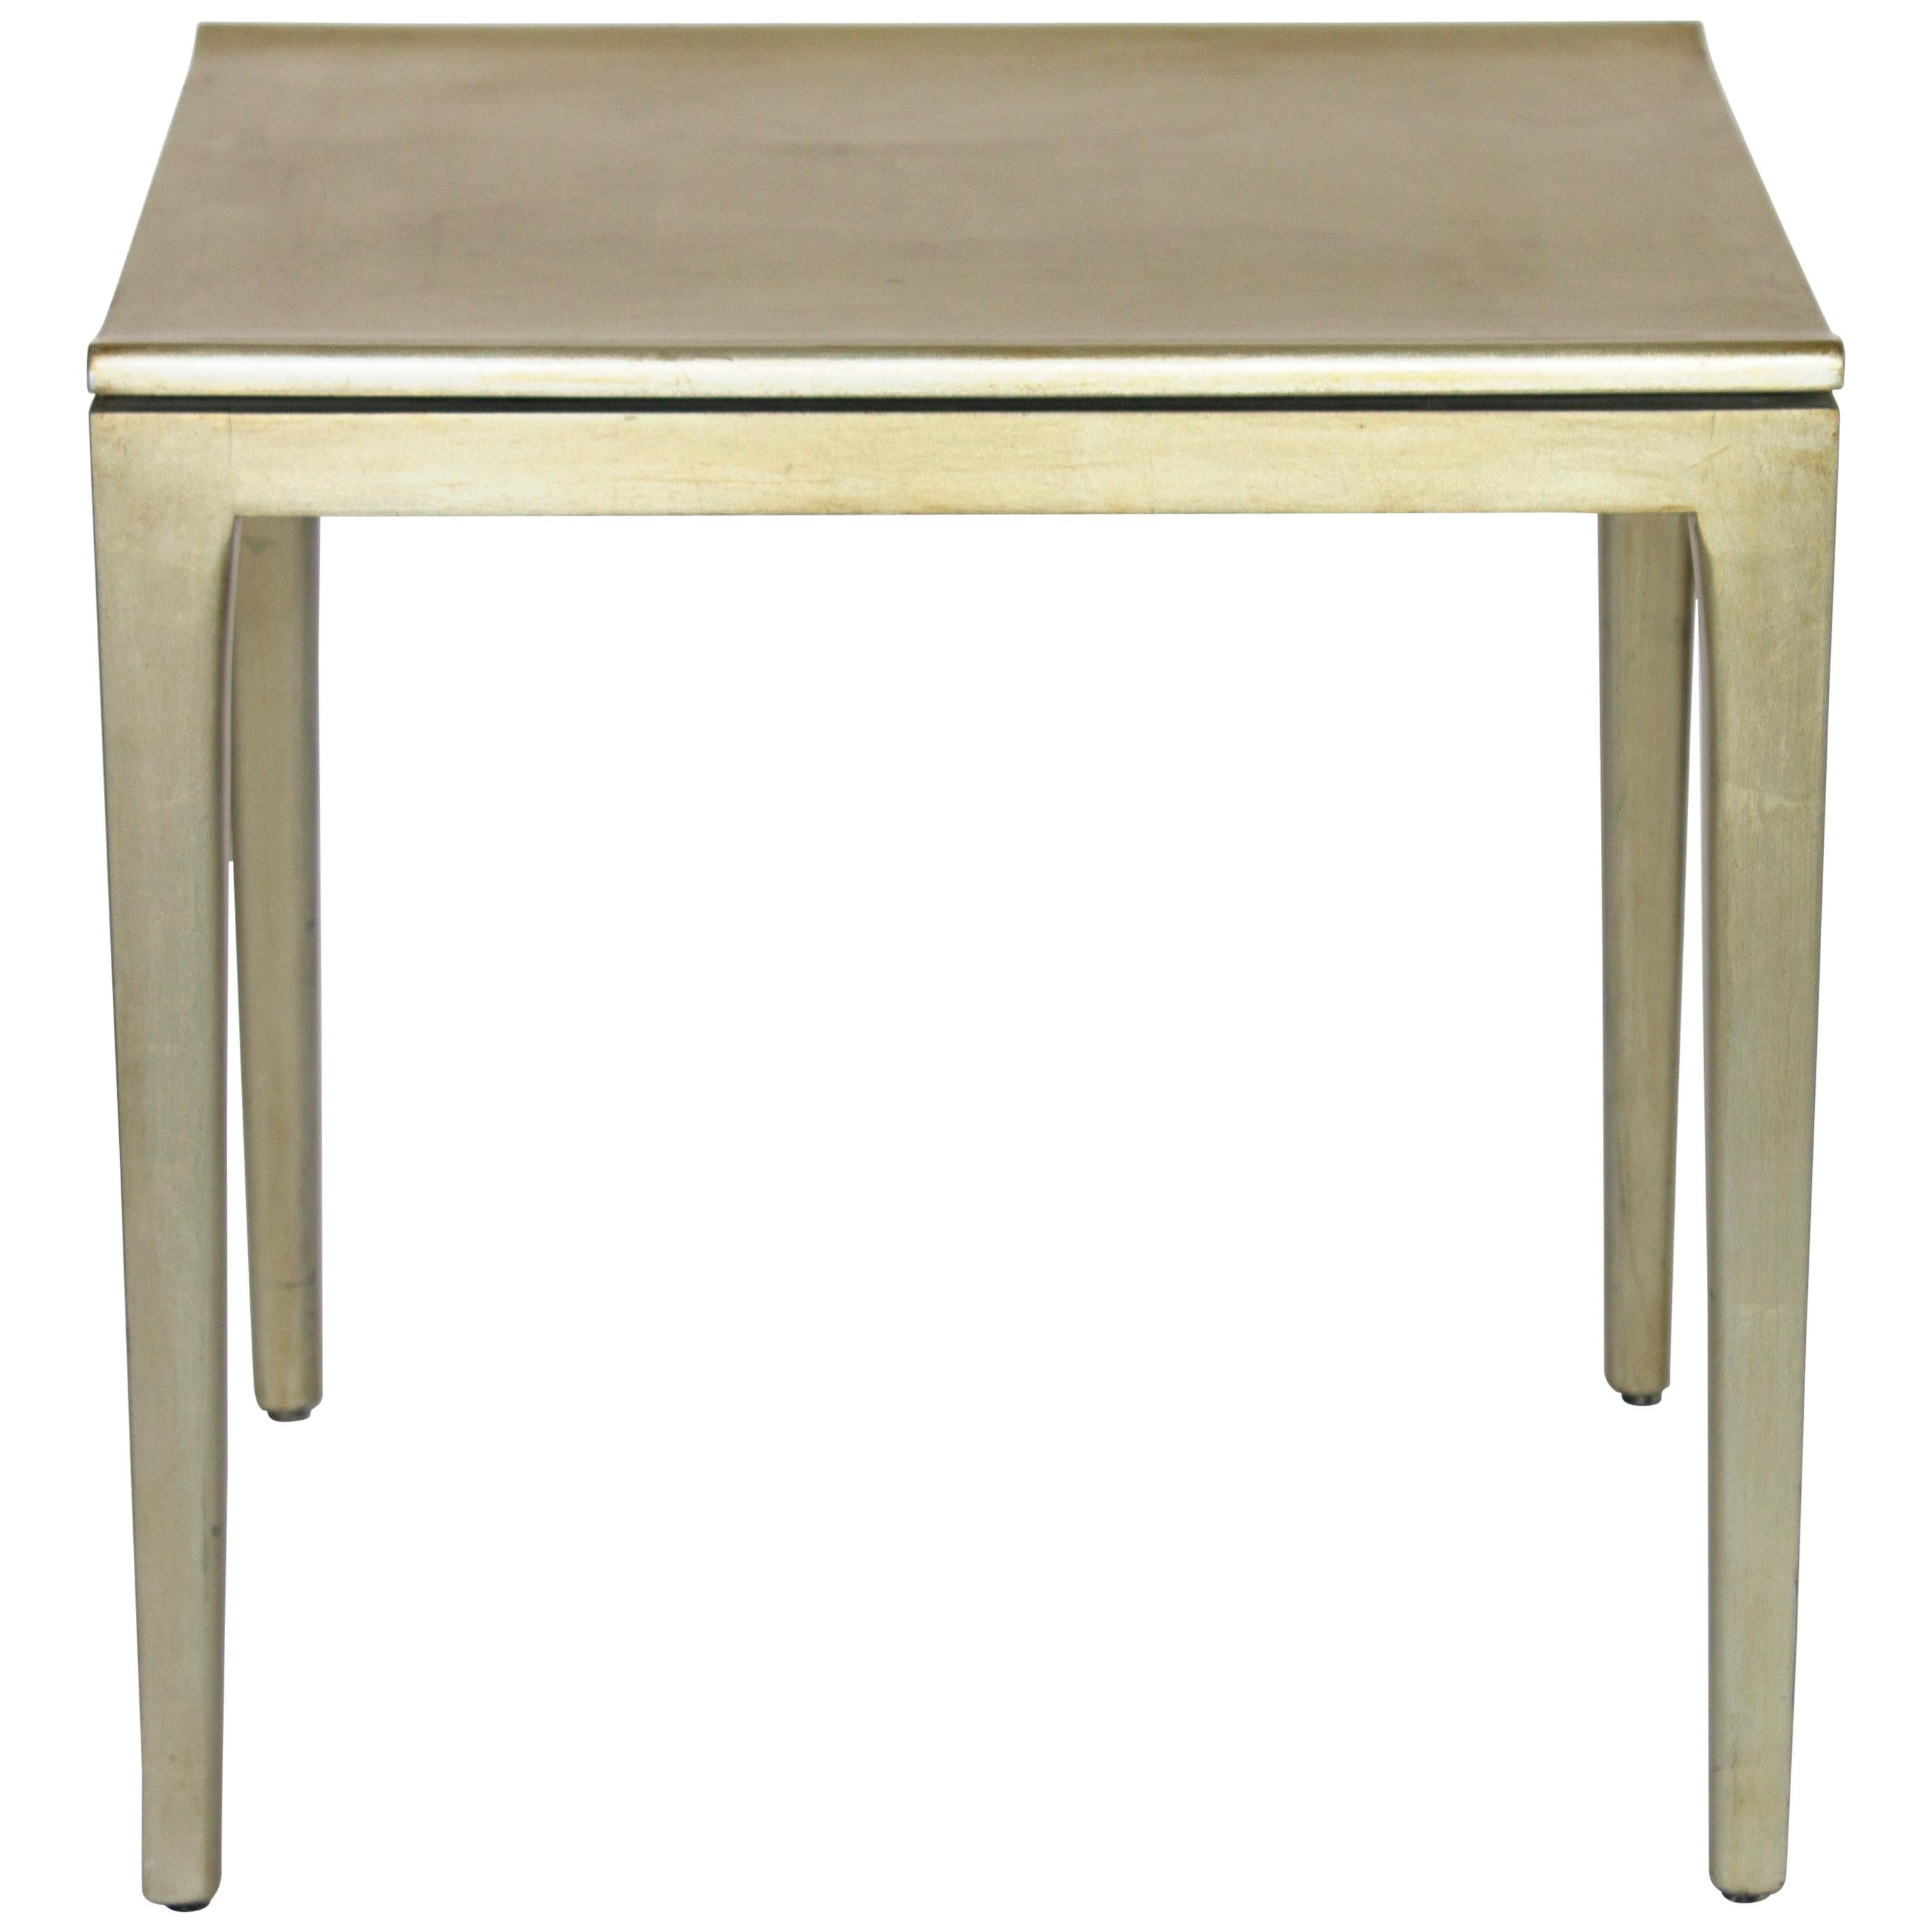 Golden leaf side table.
Handmade.
Beautiful patina.
Dimensions: 48 cm H x 40 cm W x 49 cm D.
Unique piece.